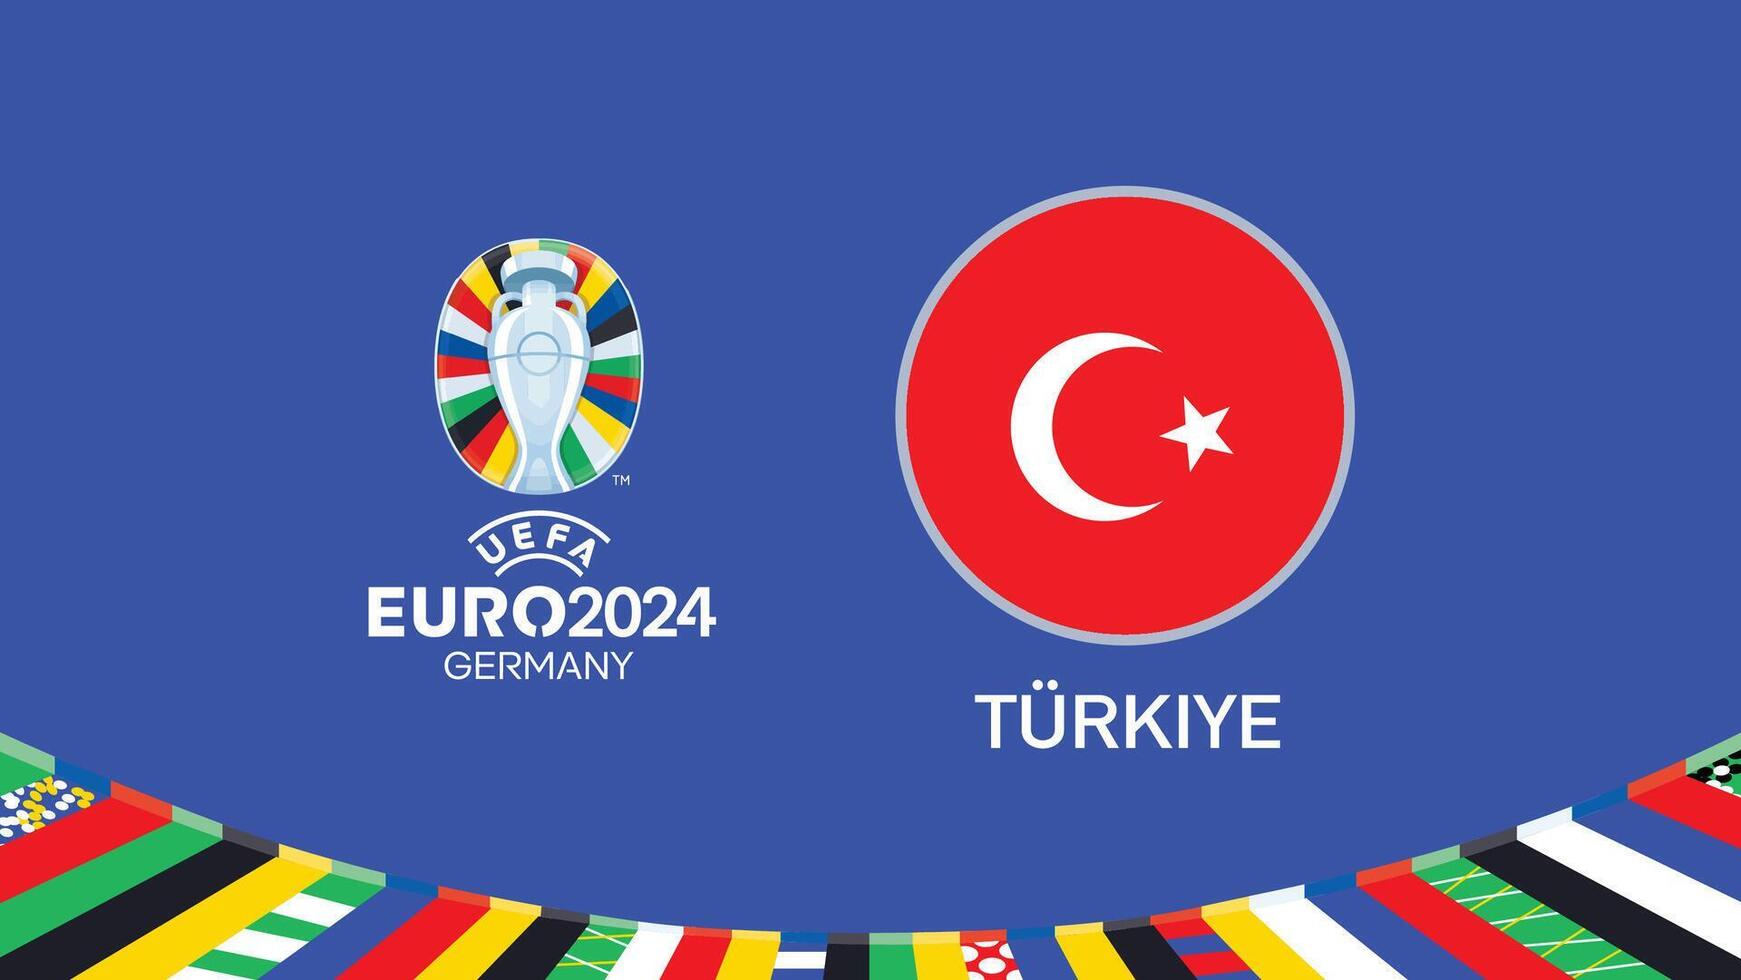 euro 2024 Alemanha turquiye bandeira emblema equipes Projeto com oficial símbolo logotipo abstrato países europeu futebol ilustração vetor